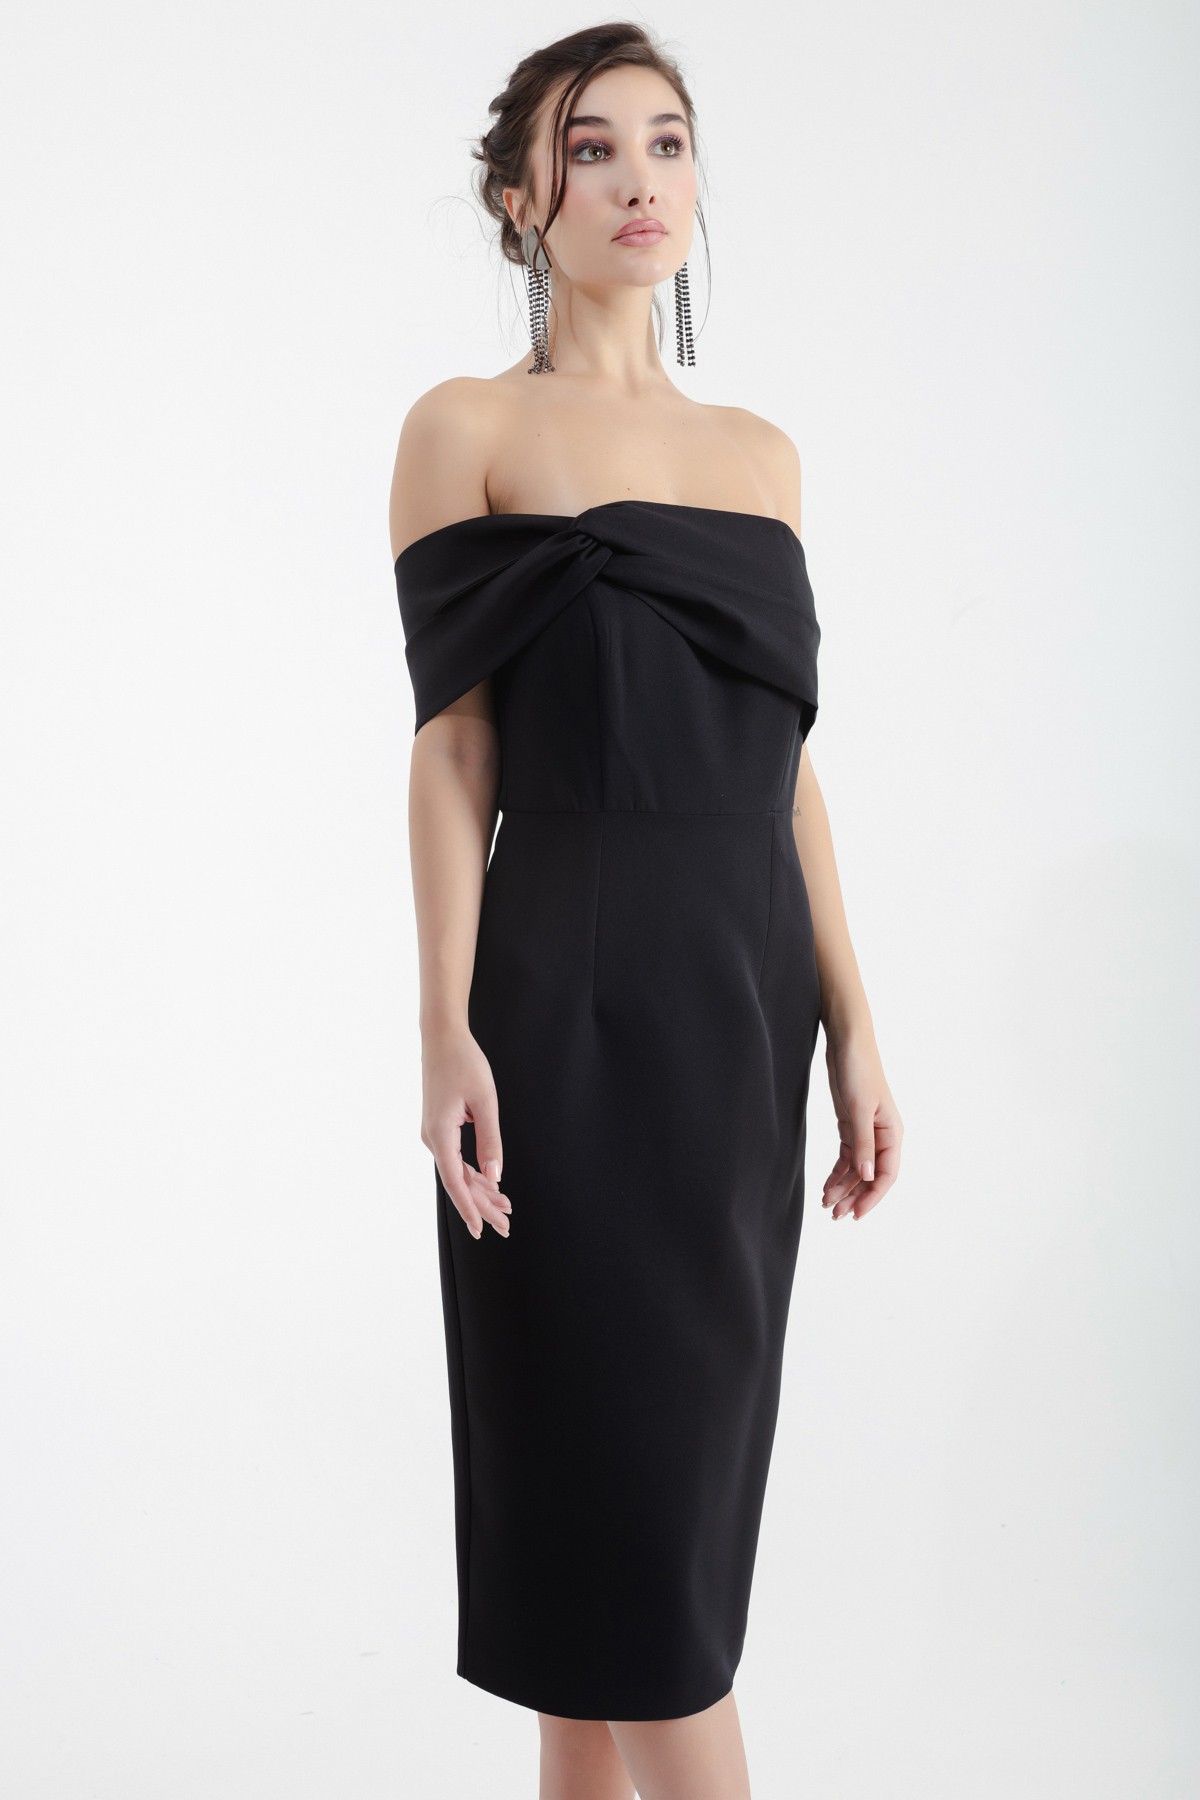 Kadın Çift Bandajlı Tek Omuz Midi Abiye Elbise - Siyah